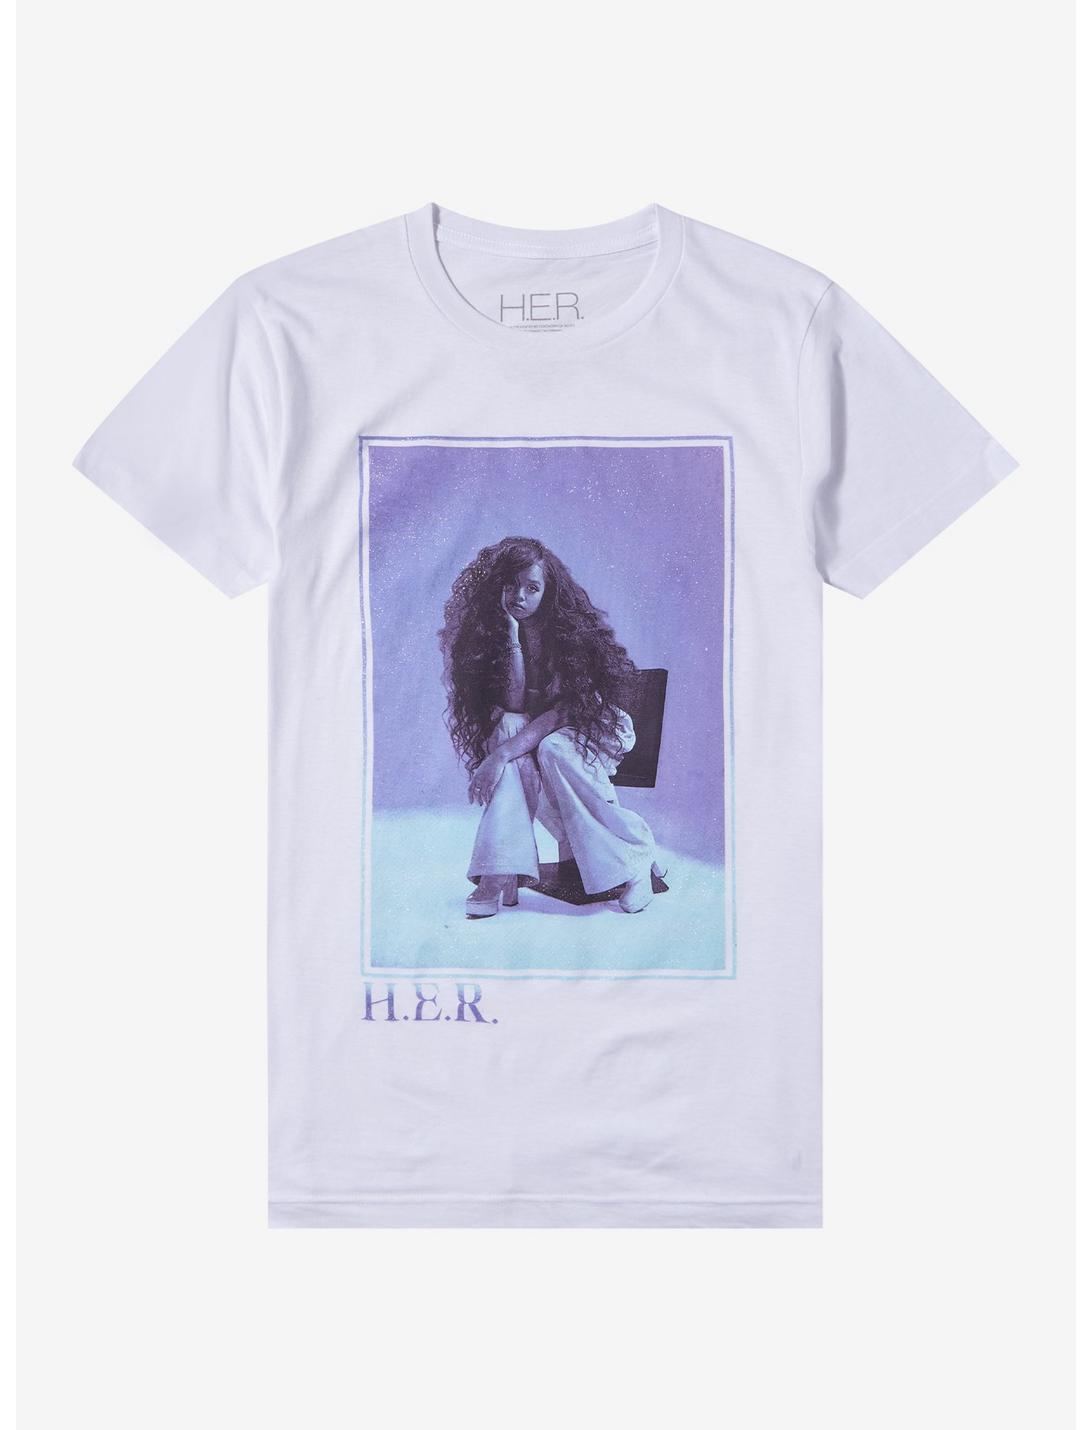 H.E.R. Glitter Portrait Boyfriend Fit Girls T-Shirt, BRIGHT WHITE, hi-res